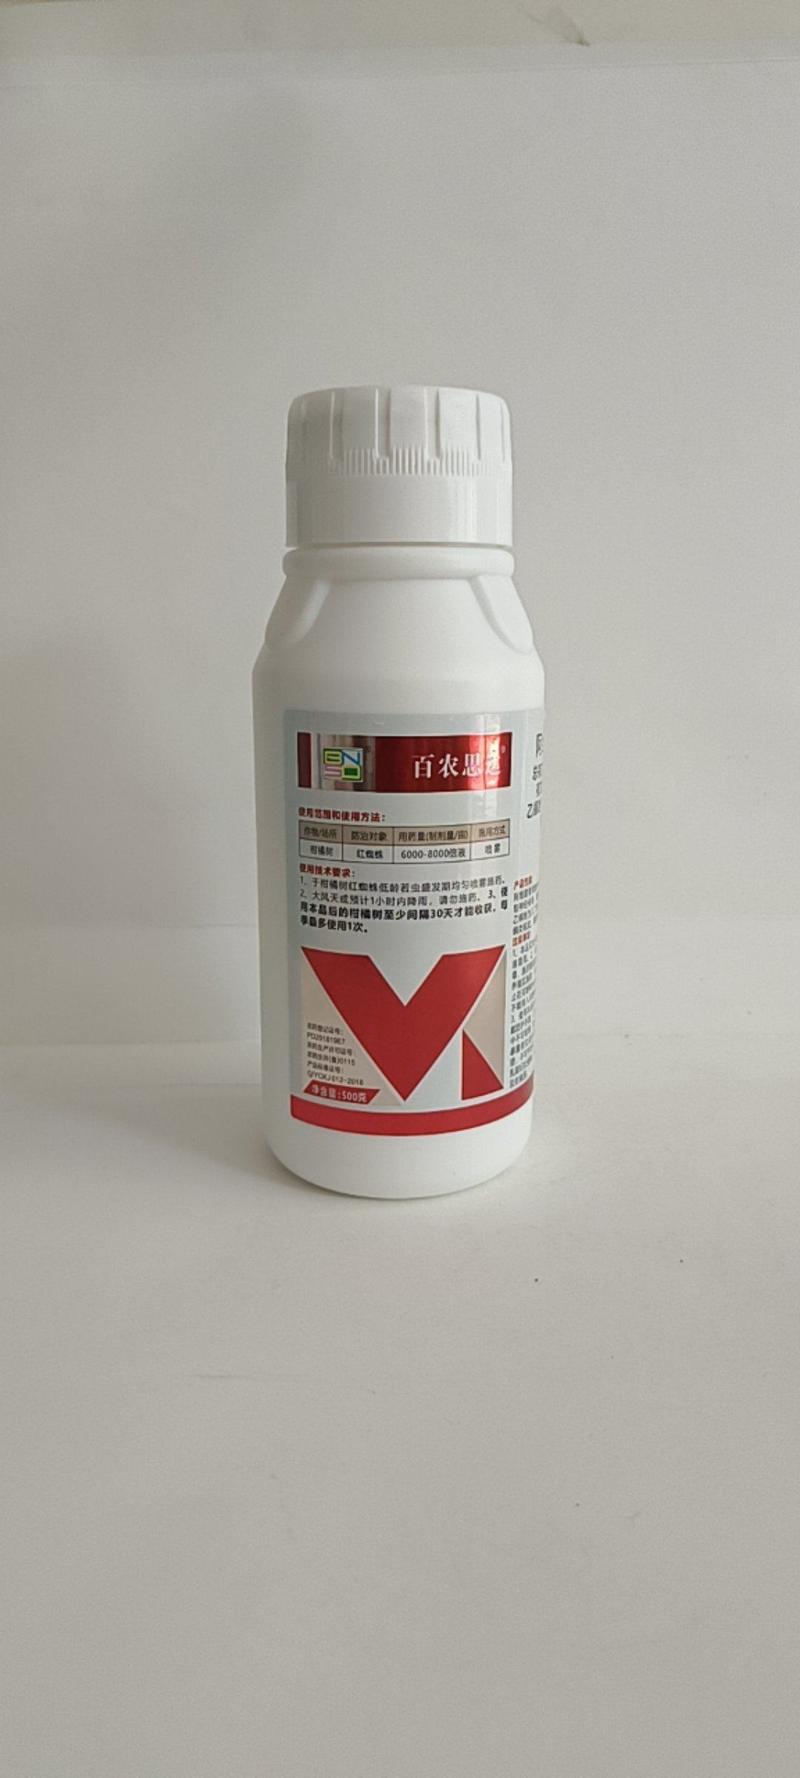 阿维乙螨唑可有效防除红蜘蛛白蜘蛛及卵持效期长。